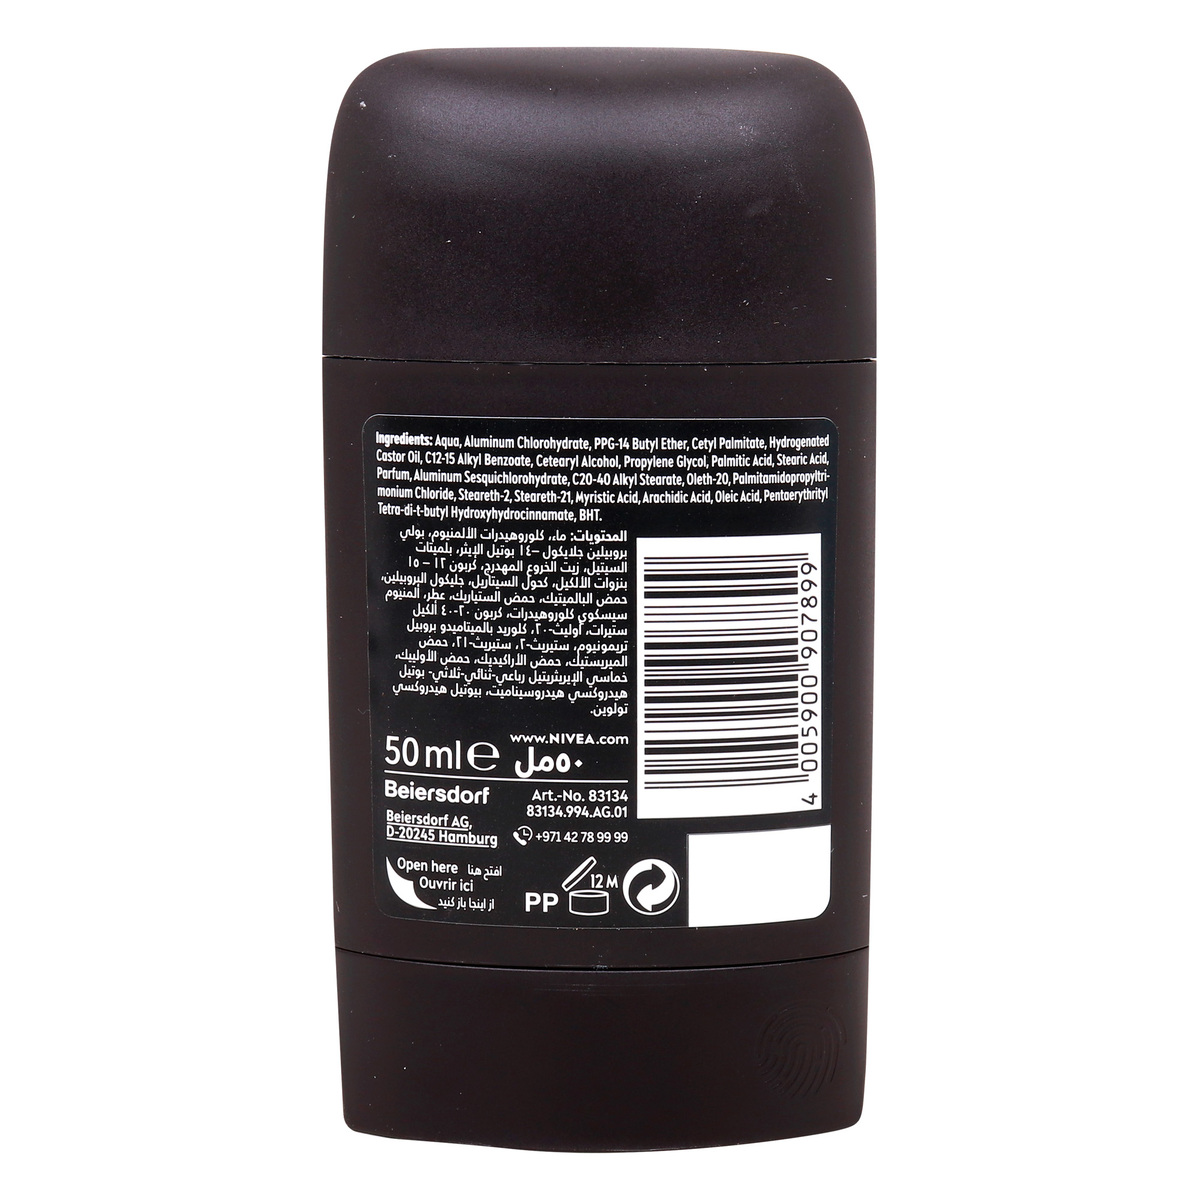 Nivea Men Black & White Invisible Original Anti-Perspirant Stick 50 ml